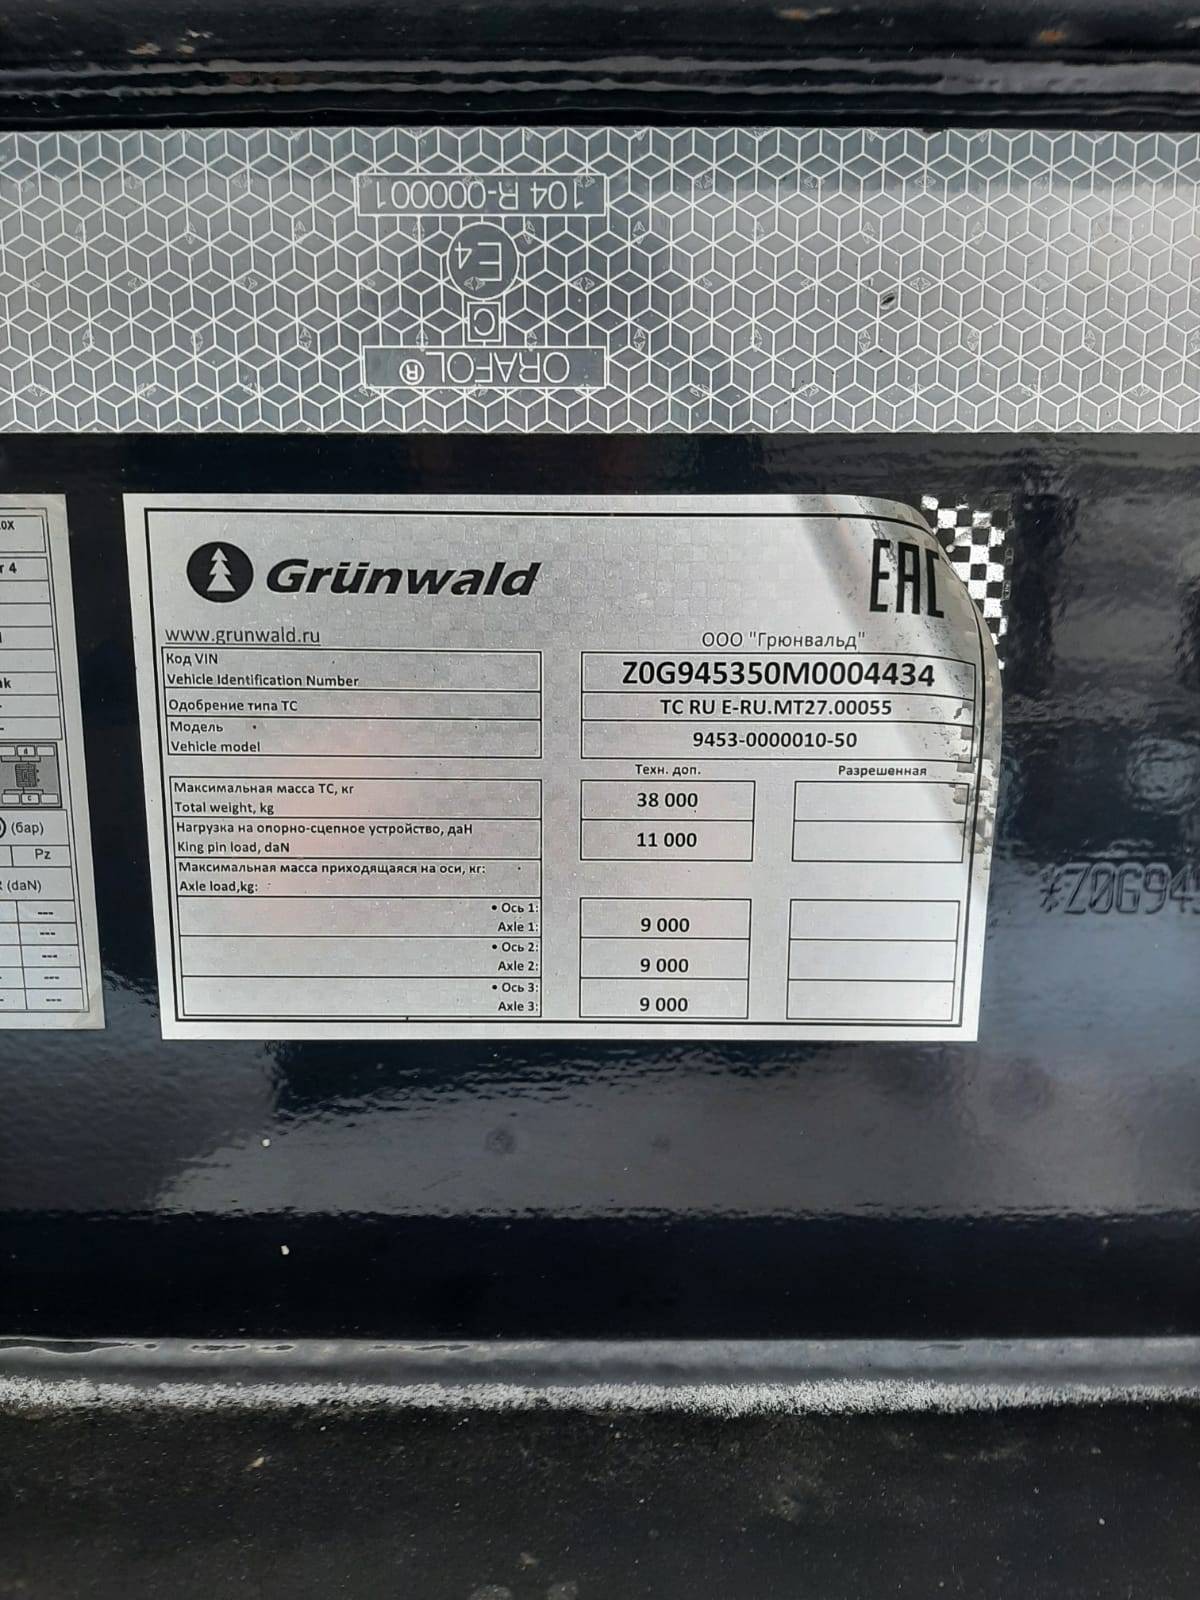 Grunwald Самосвальный TSt 34 (9453-0000010-50) Лот 000000926